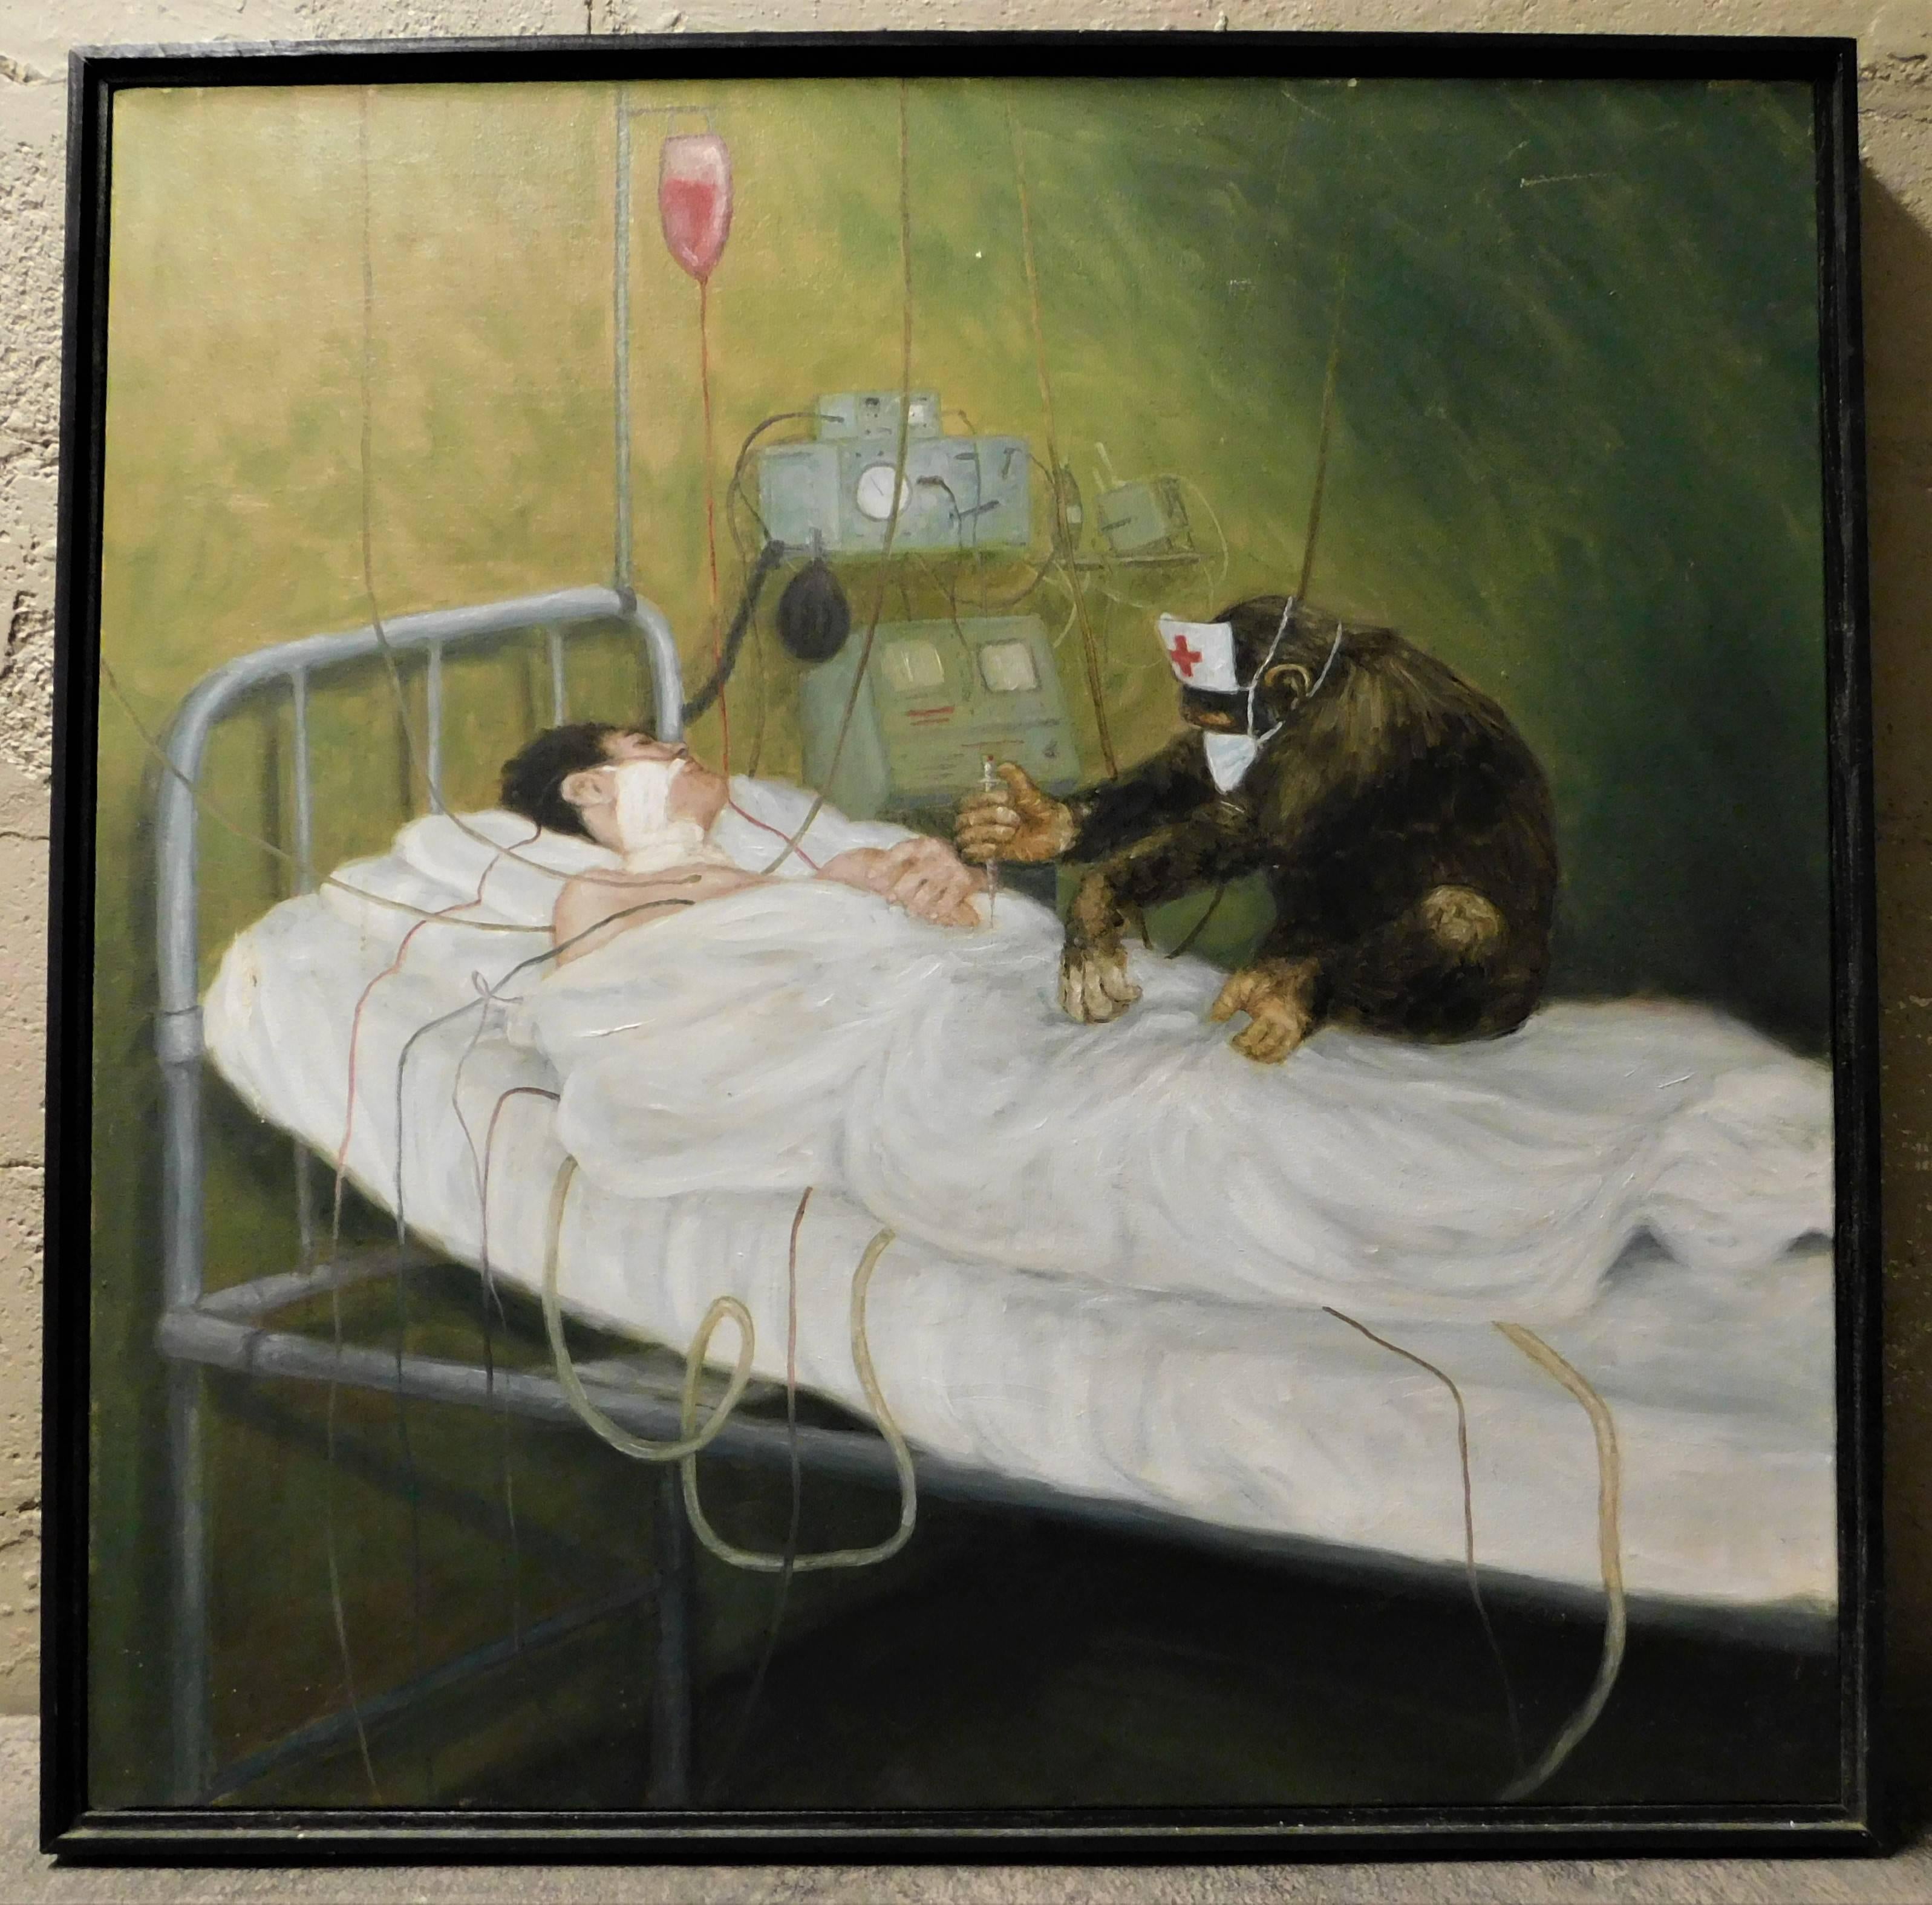 monkey on hospital bed